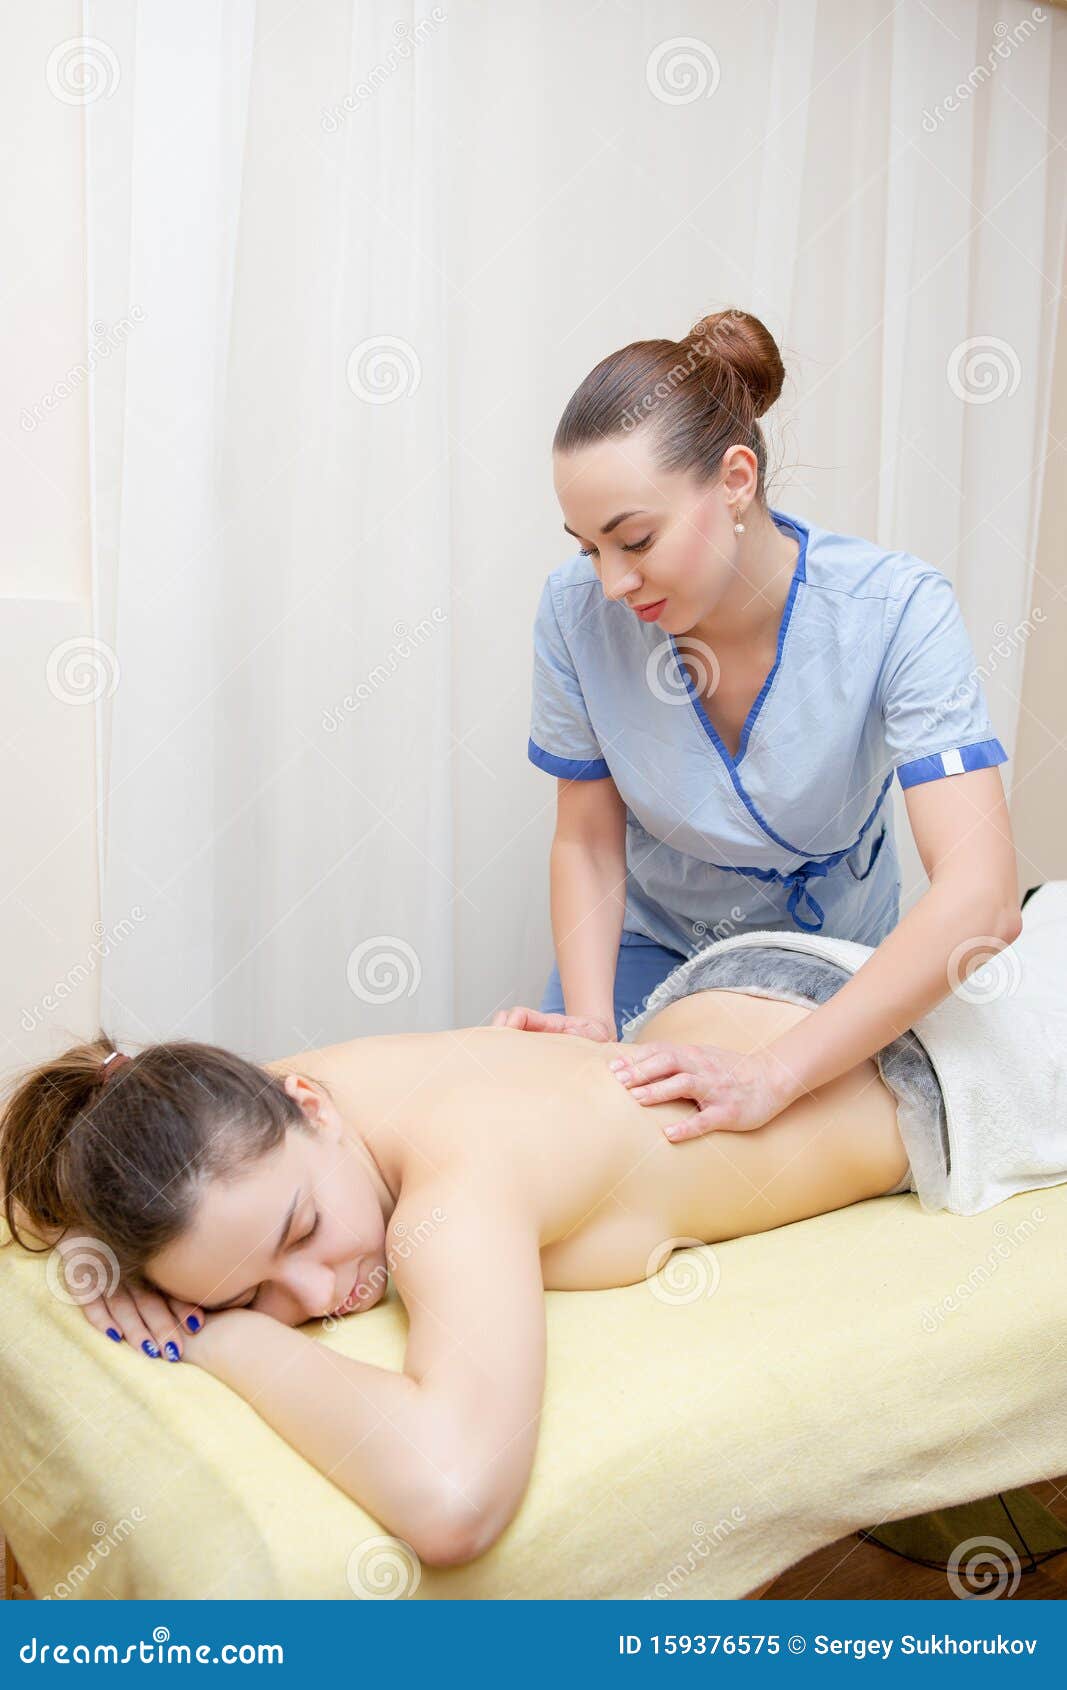 Masseuse Massage